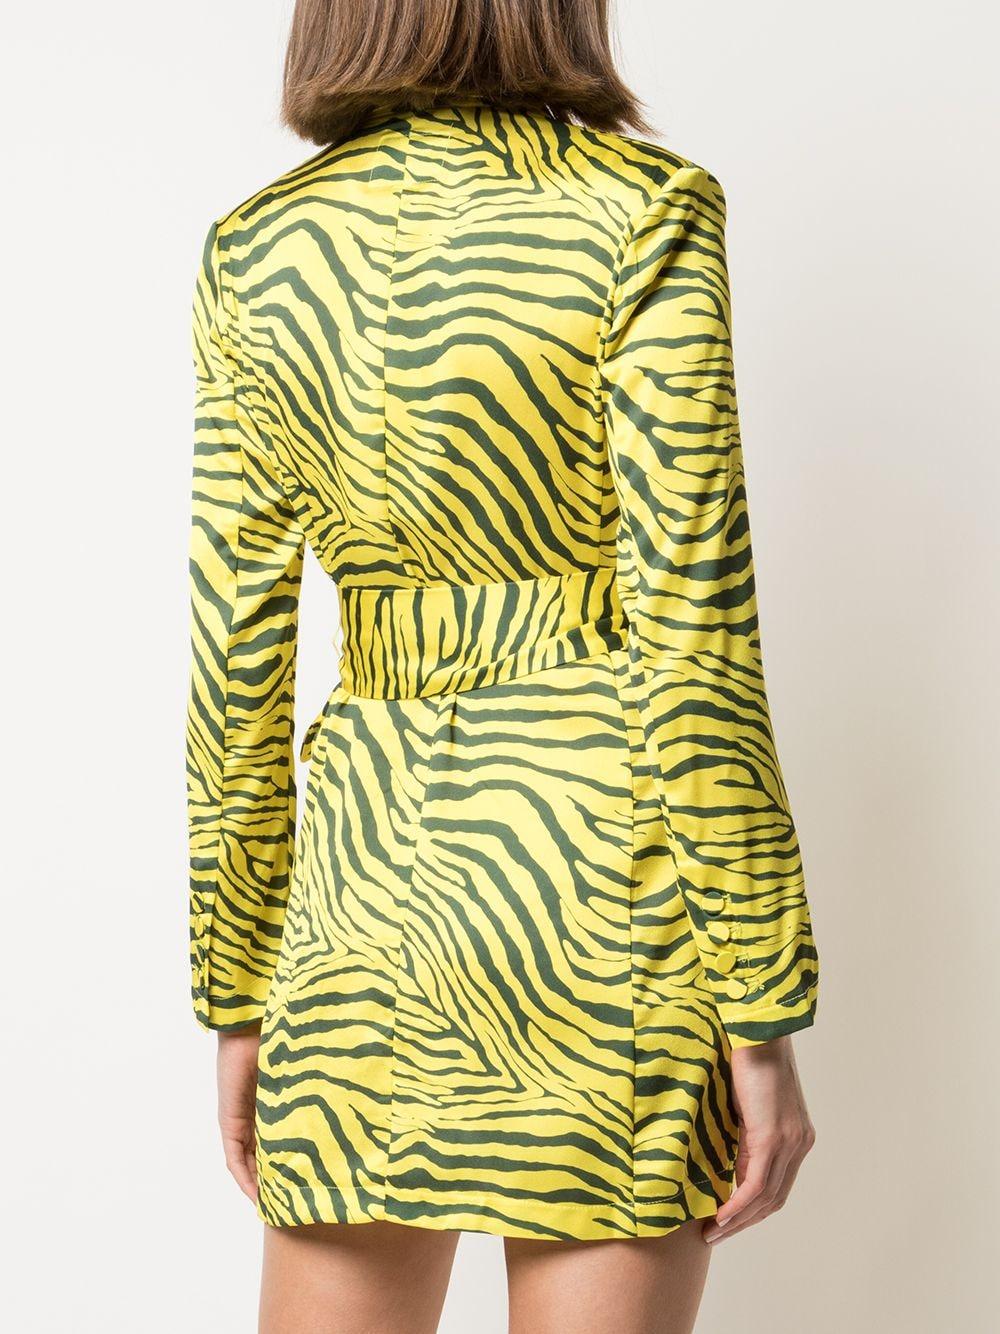 Apparis Kleid mit Zebra-Print in Gelb - Lyst